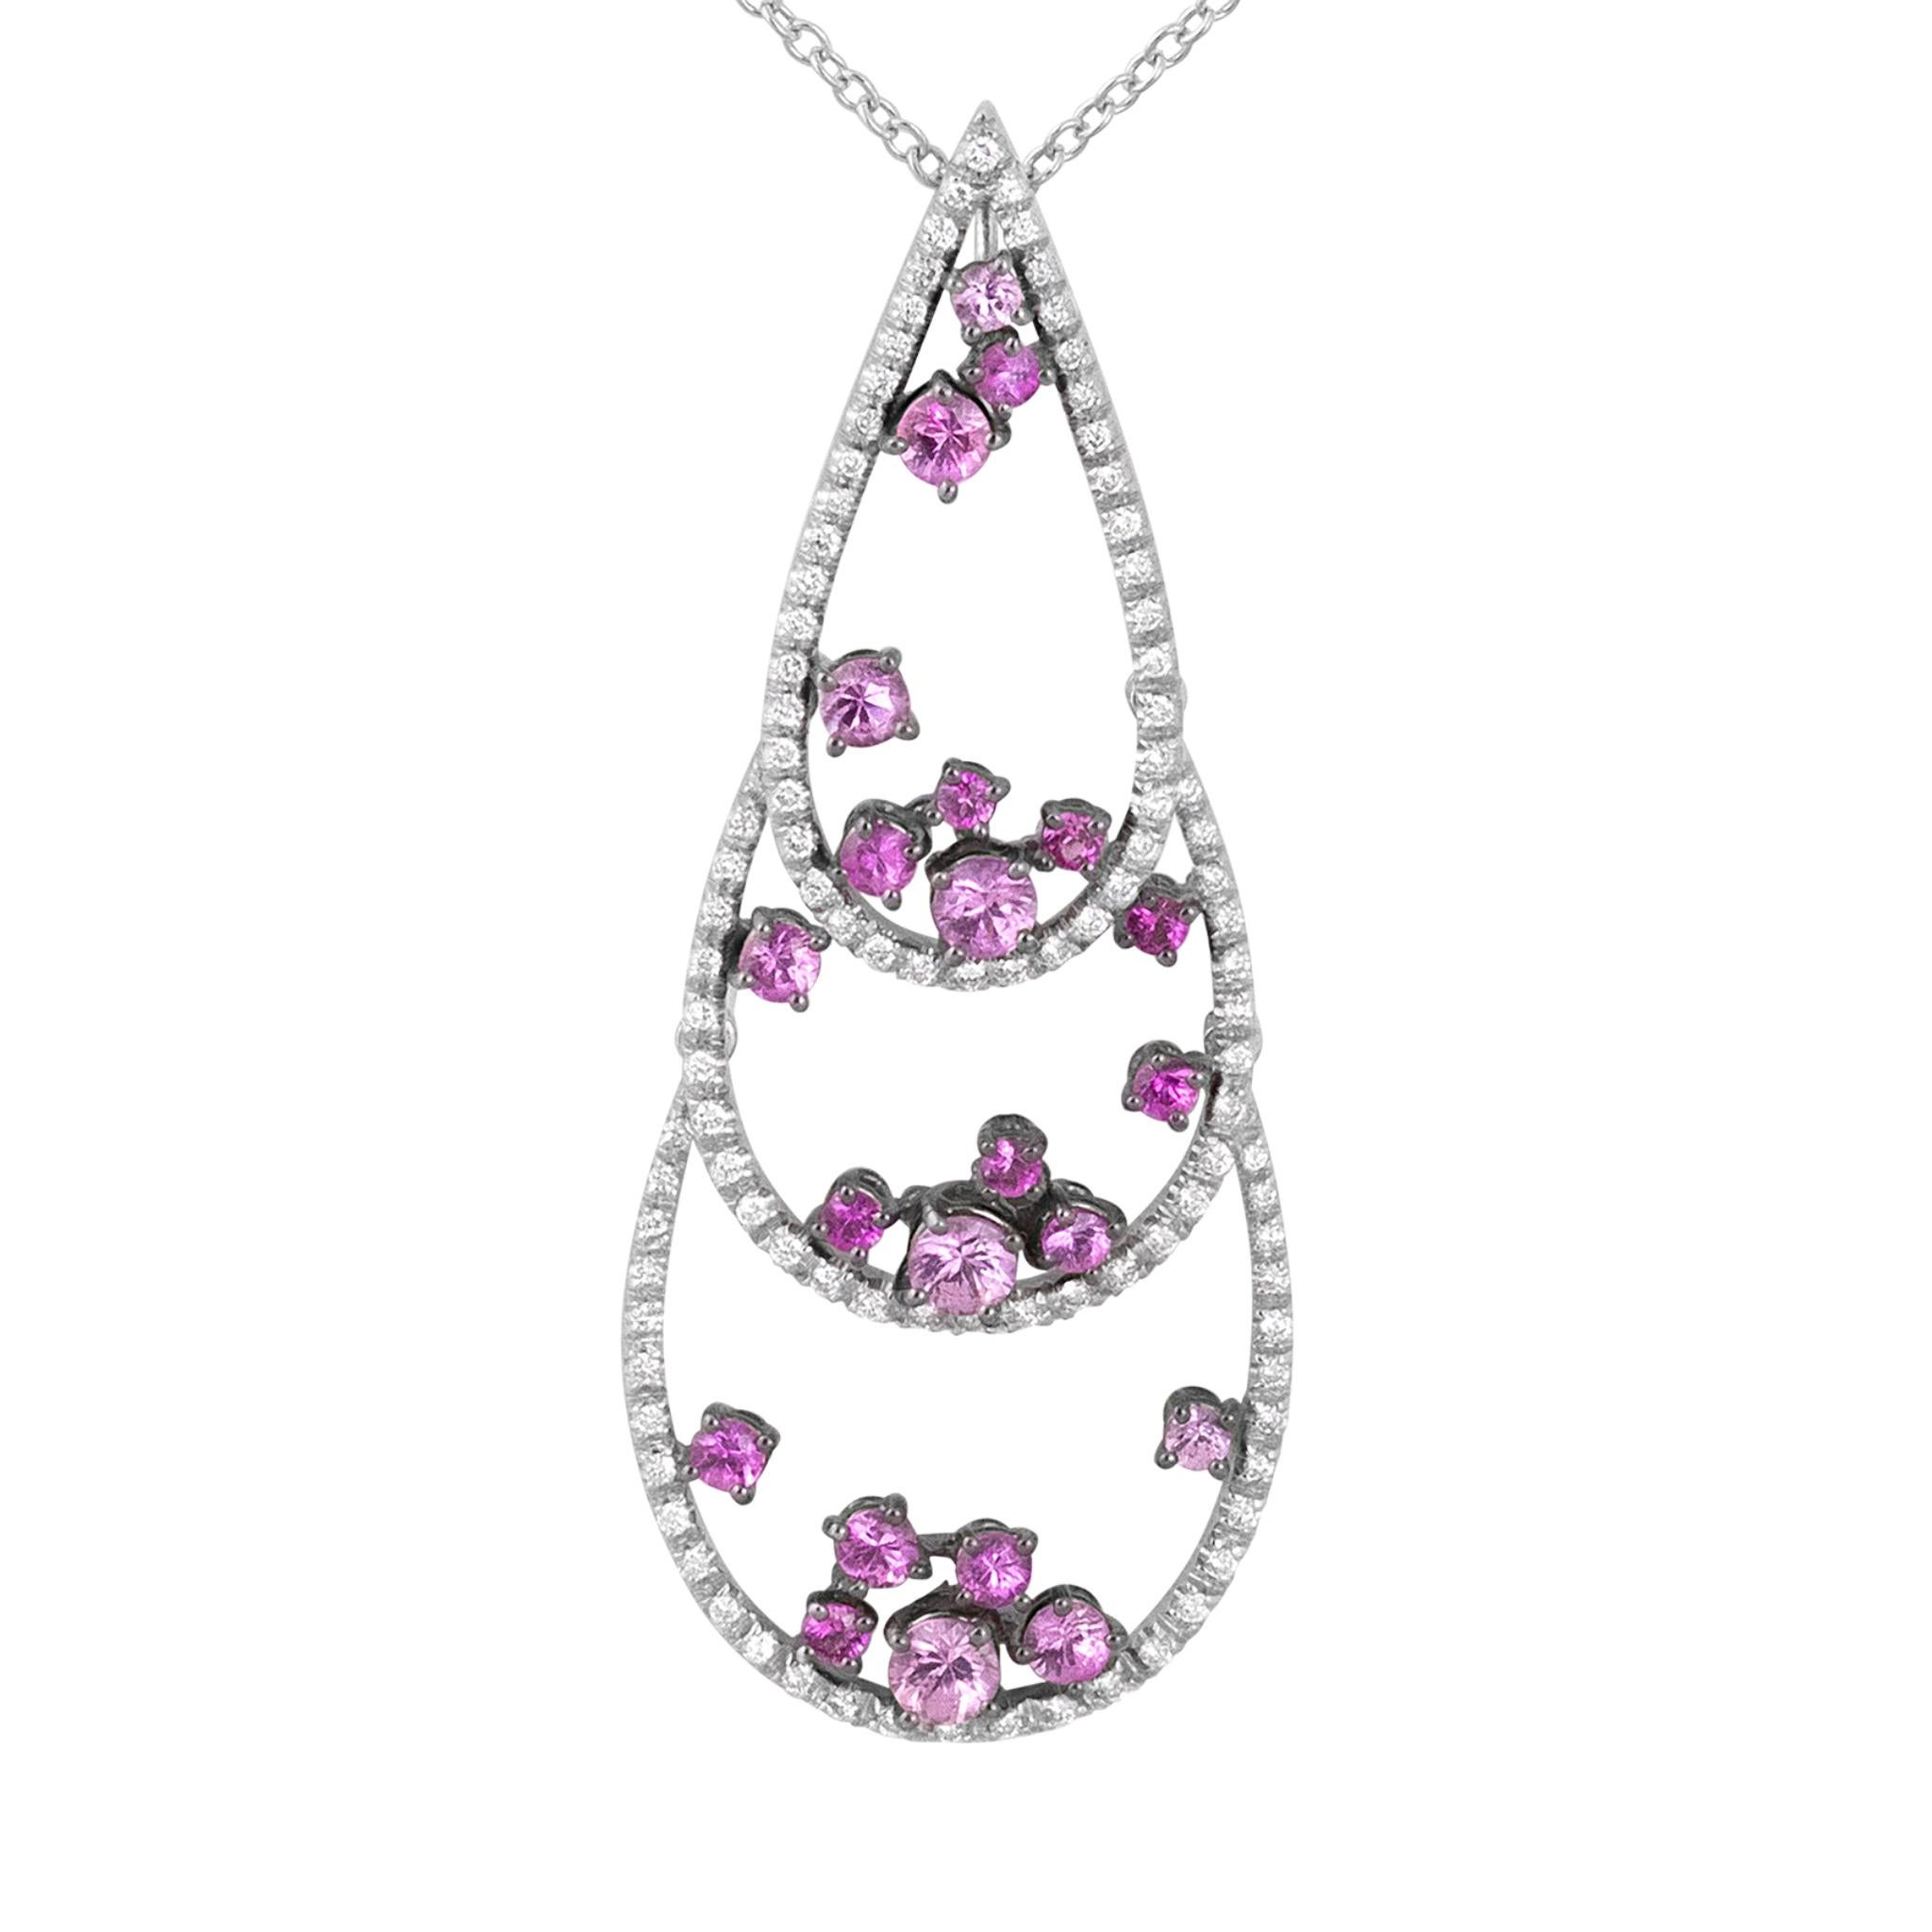 IO SI Necklace
18K White Gold
Diamond: 0.52ctw
Pink Sapphire: 2.10ctw
Retail price: $11,650.00
SKU: BLU01472